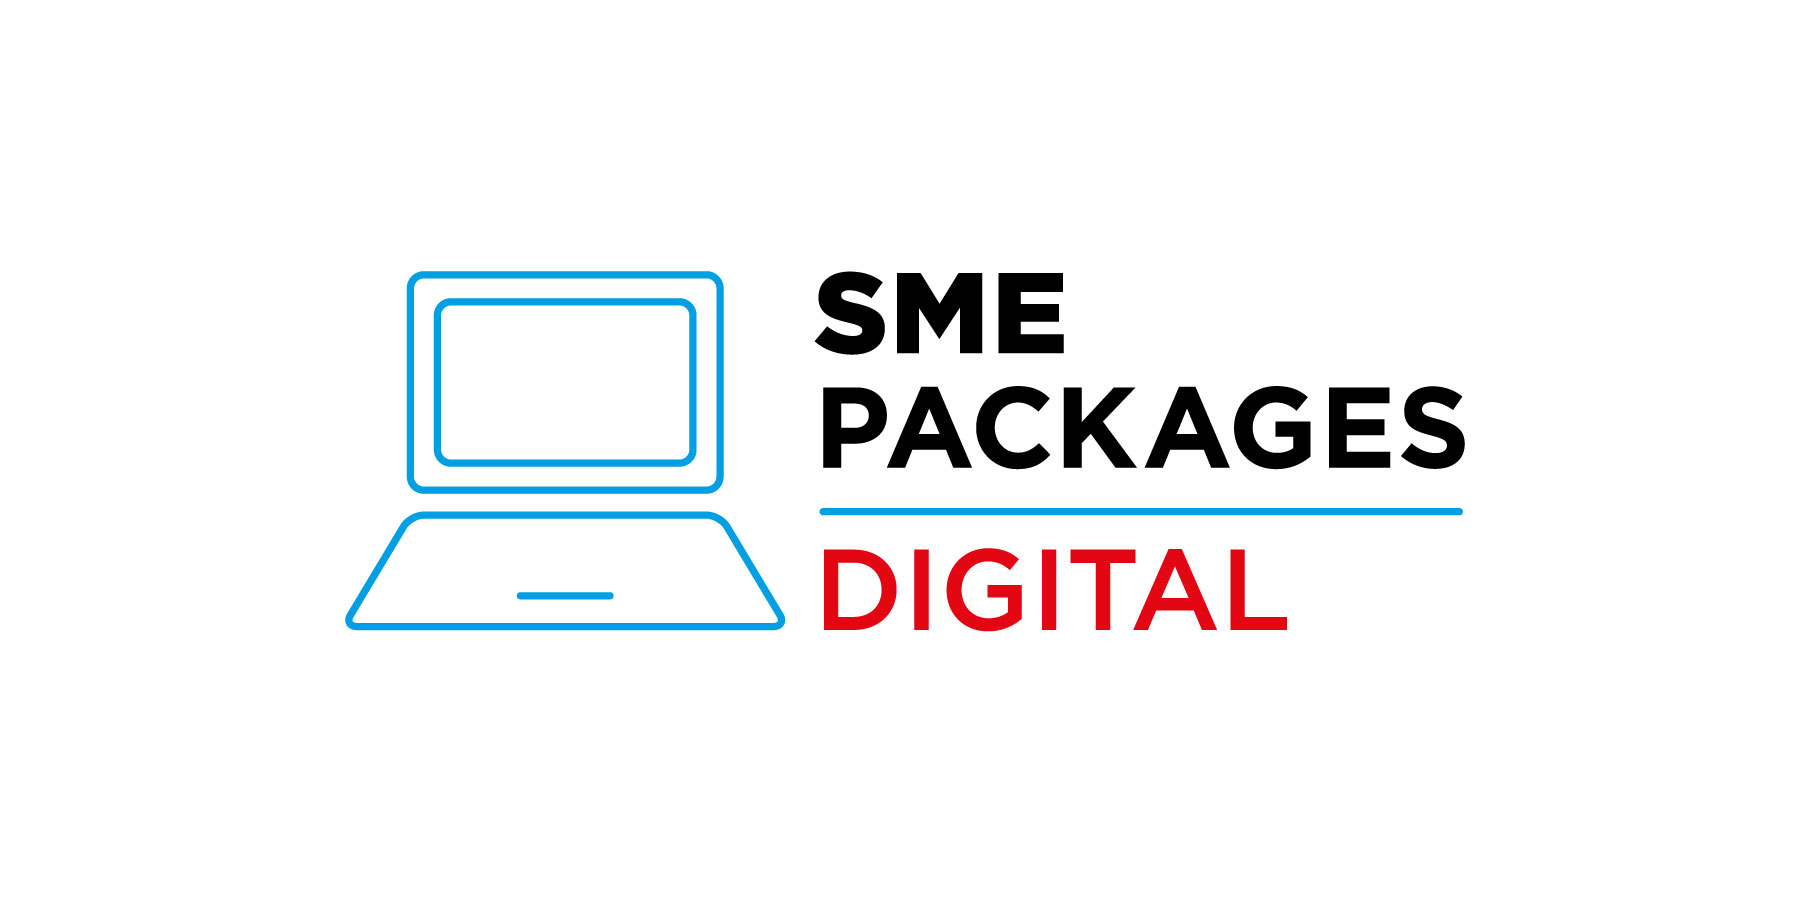 SME Packages Digital